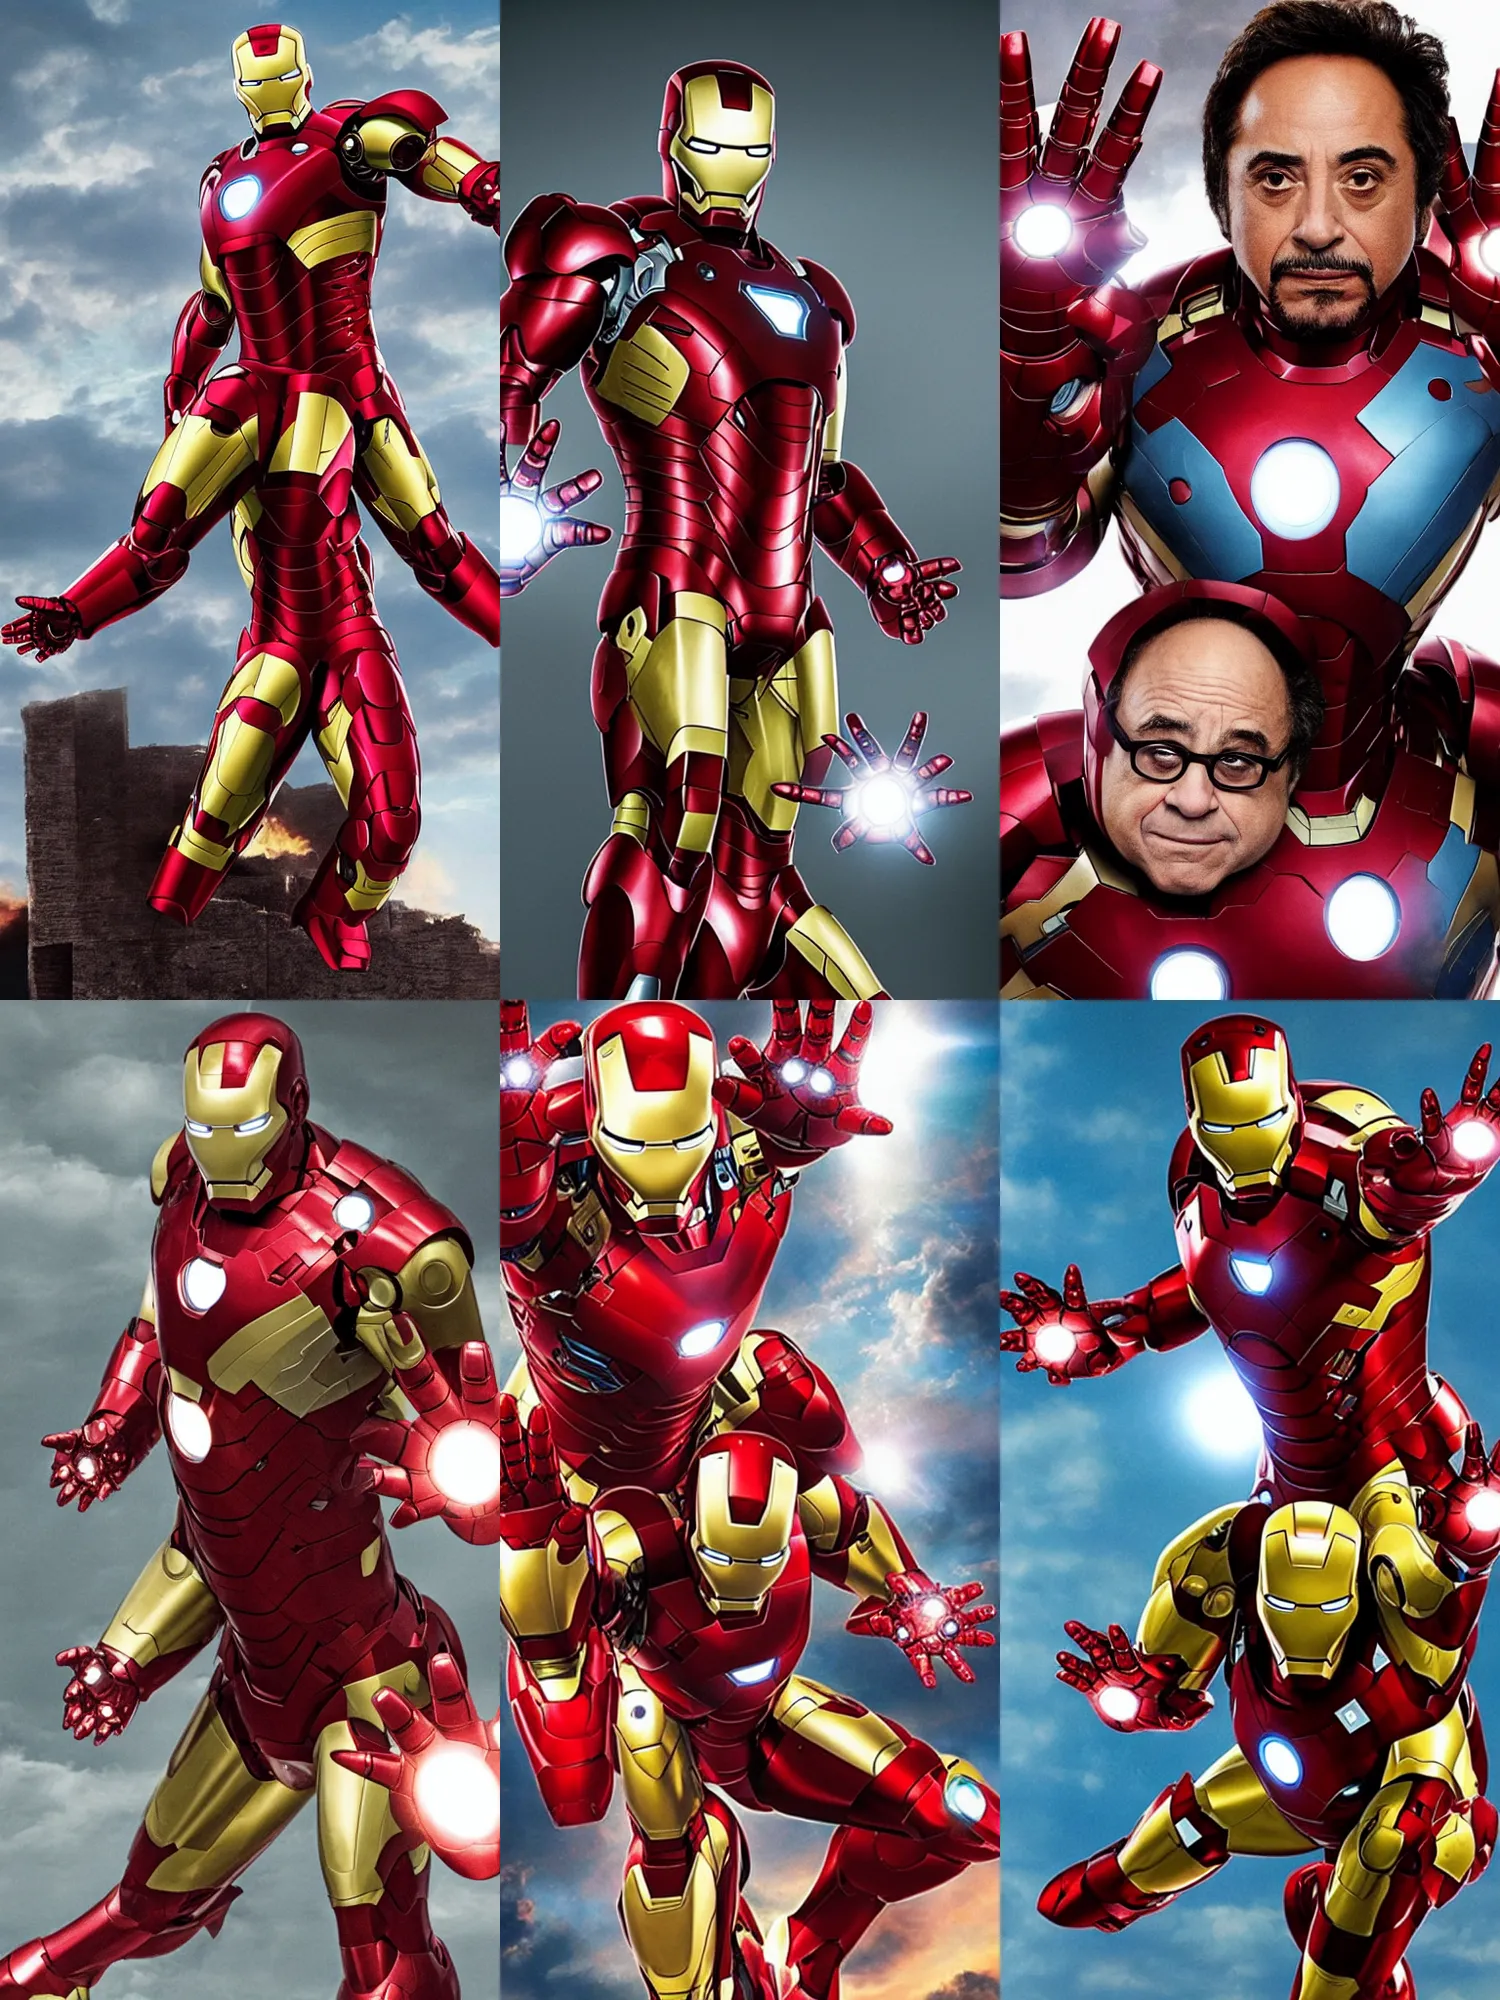 Prompt: Danny Devito as Iron Man